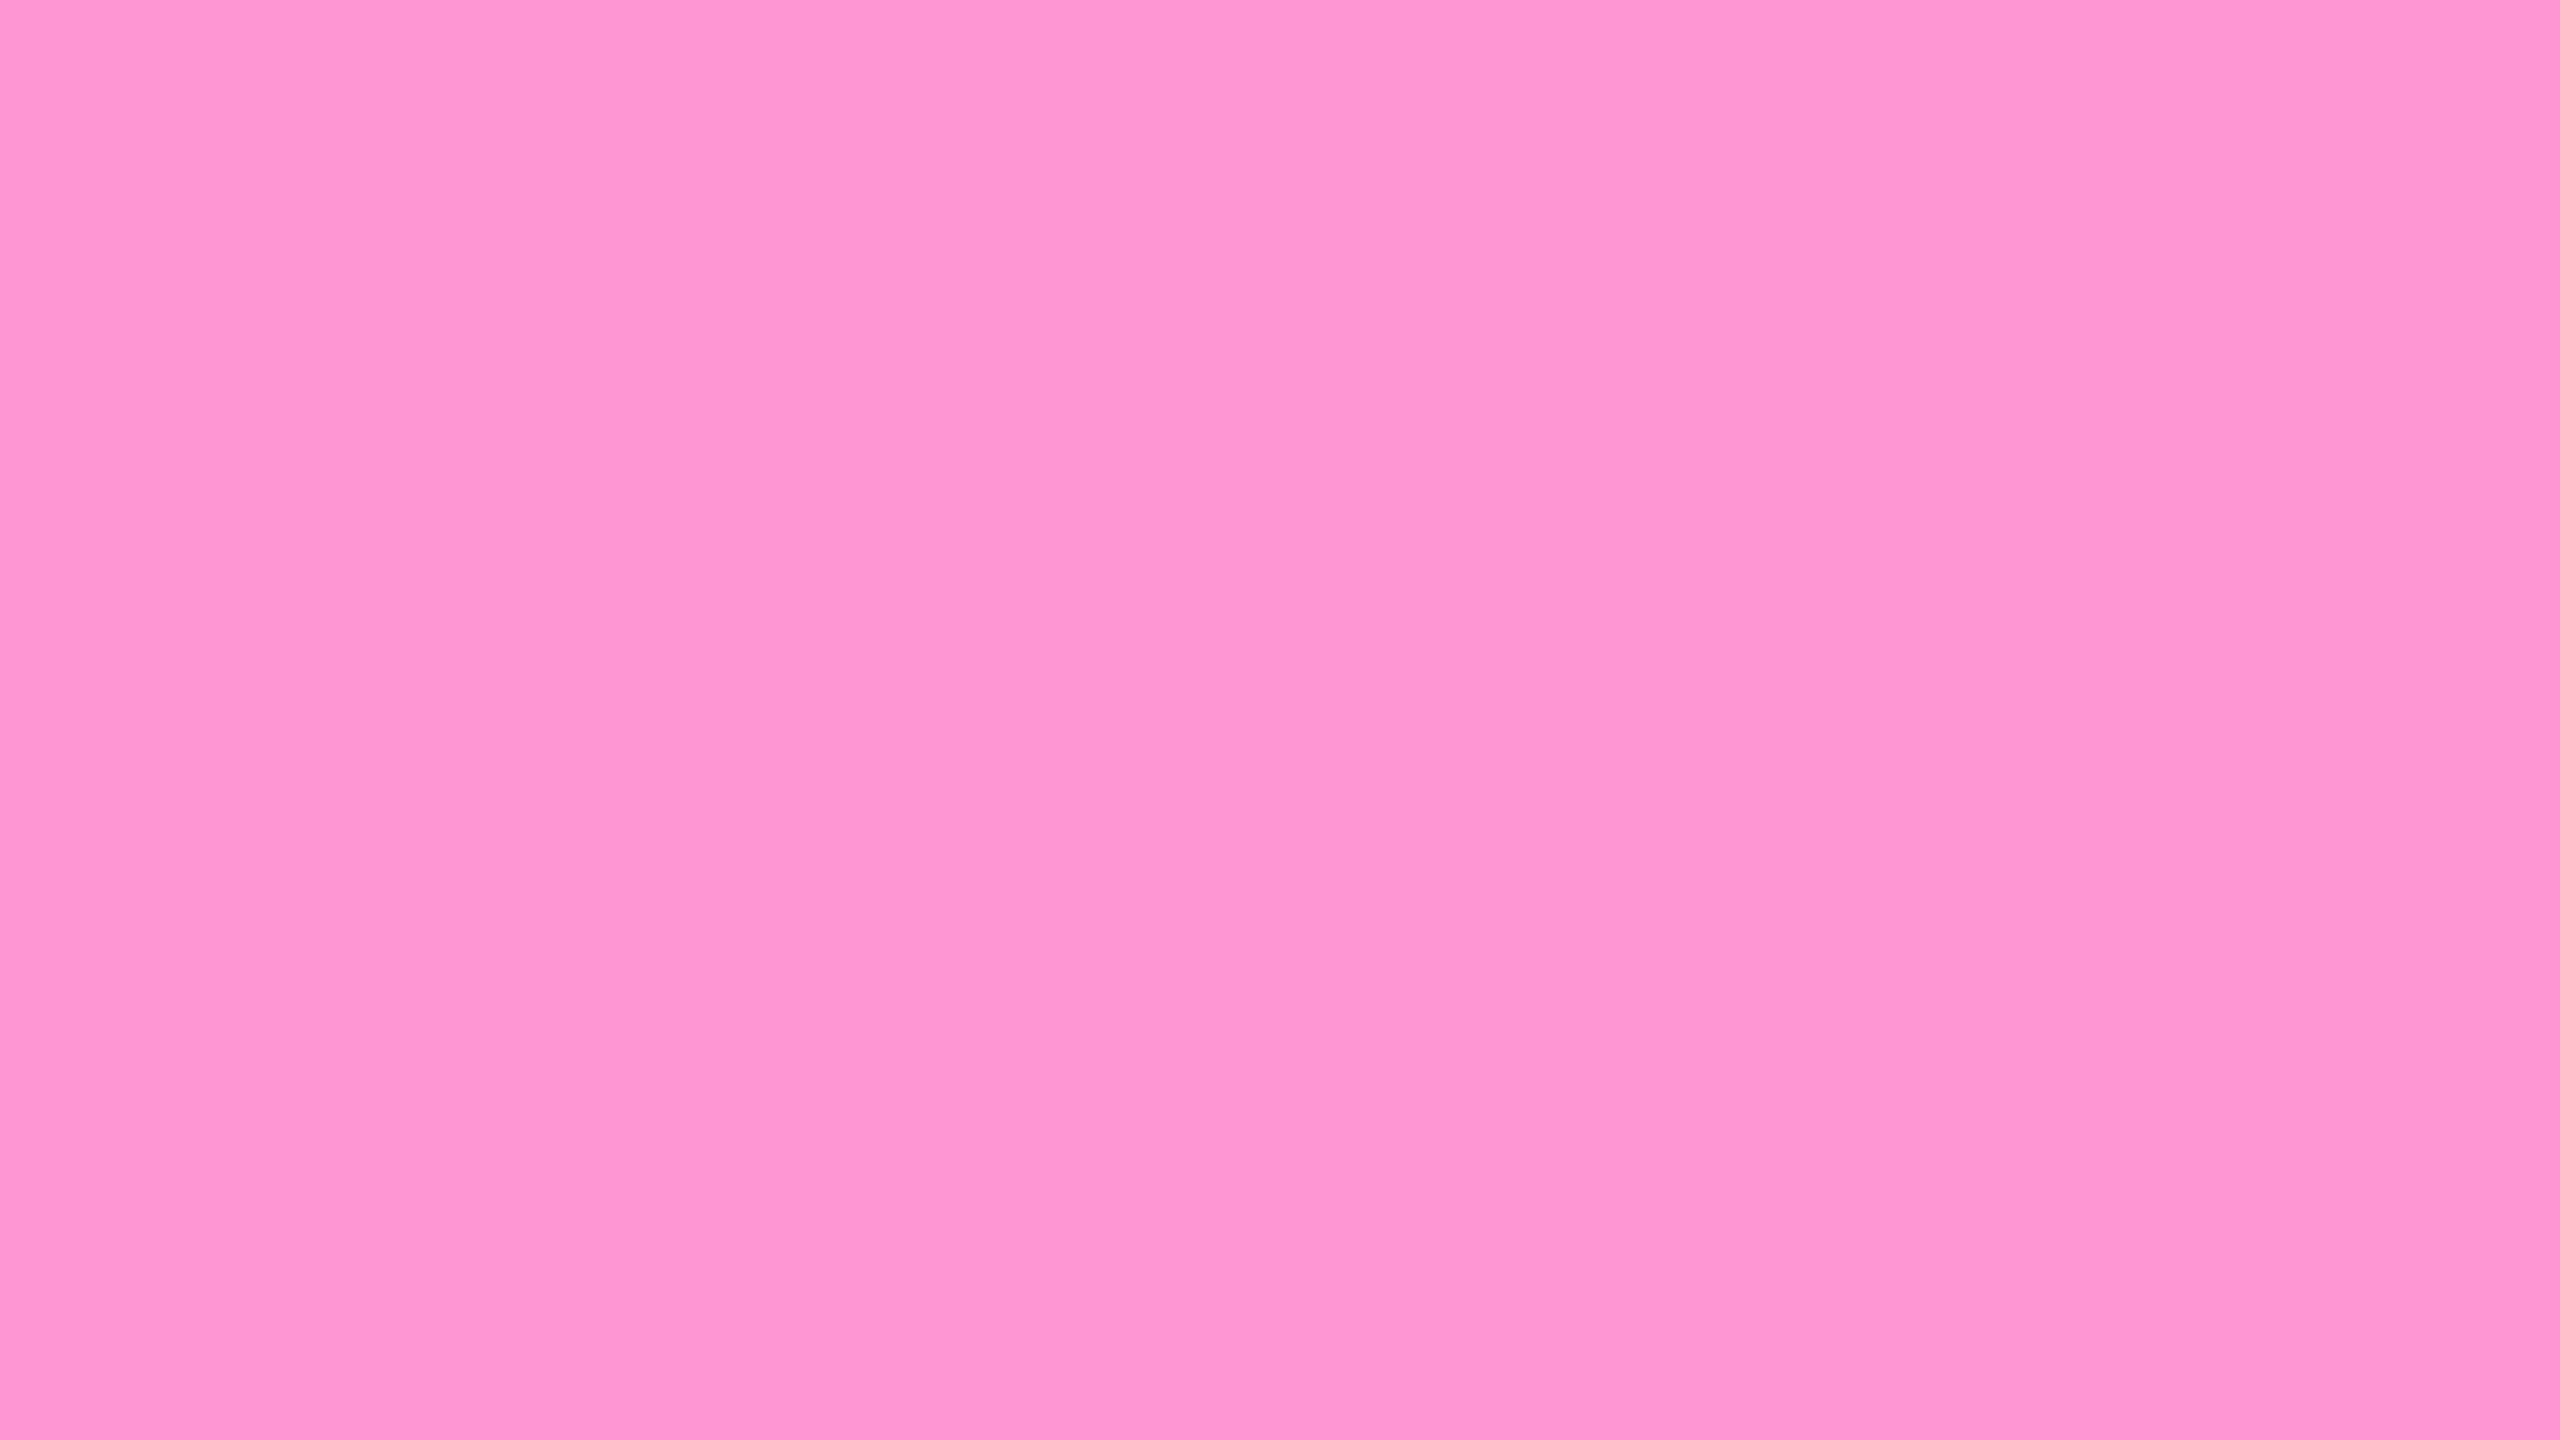 2560x1440 pink desktop wallpaper themes 41+ Tumblr Theme backgrounds Â·â  Download free  backgrounds for desktop